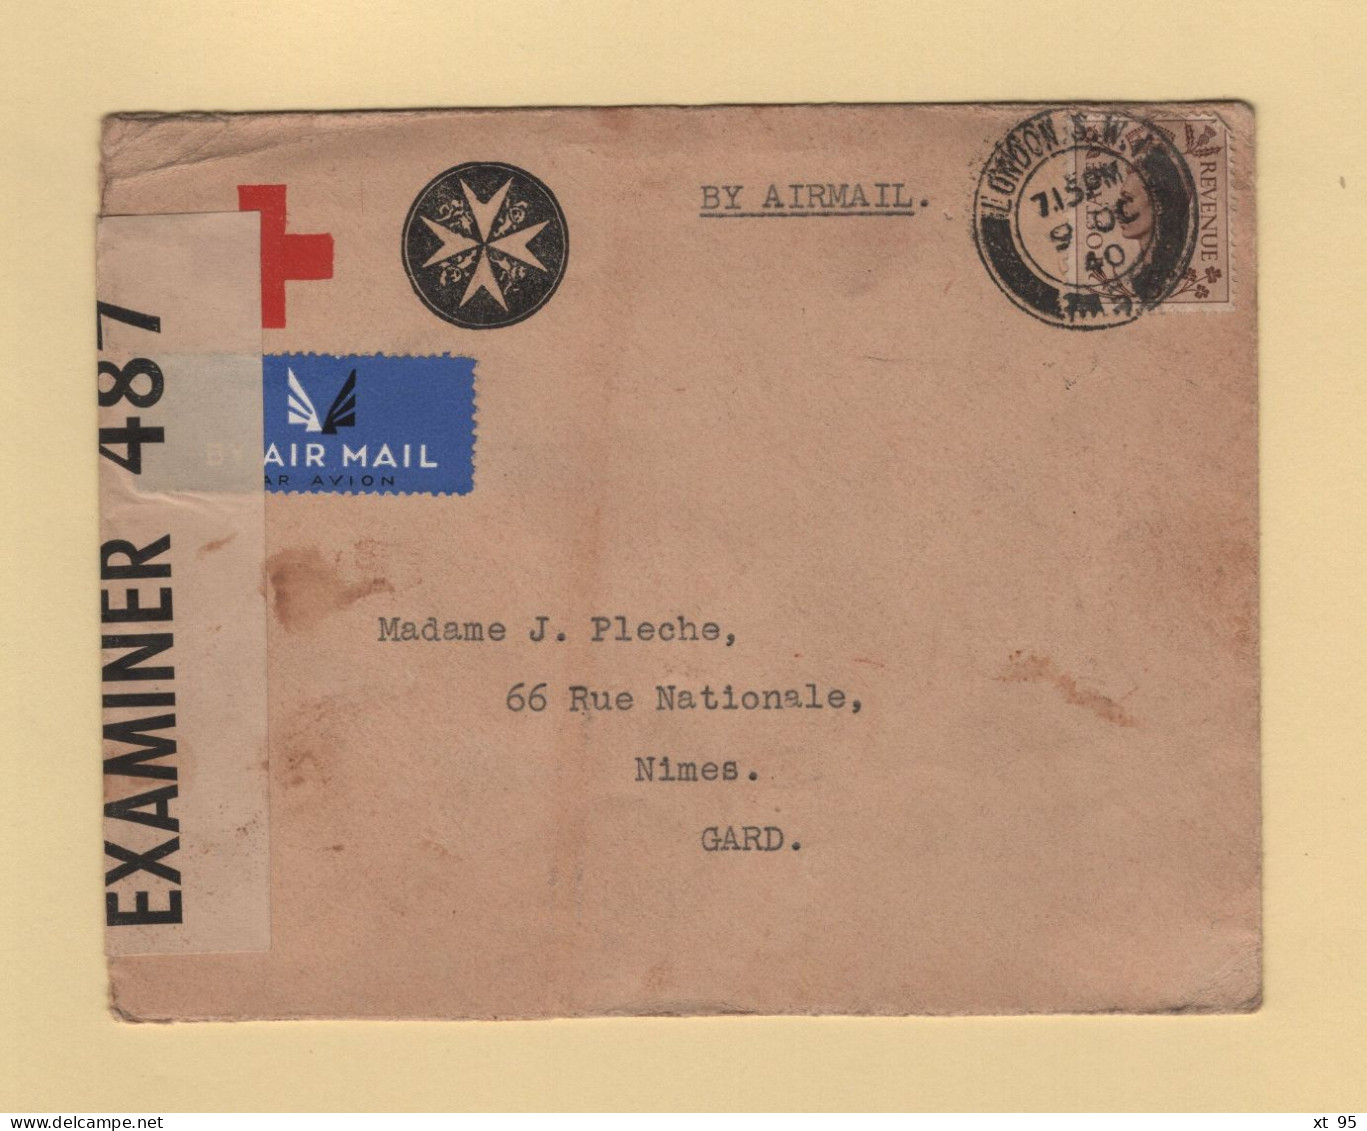 Londres - 1940 - Par Avion Destination France - Censure - Croix Rouge Croix De Malte - Covers & Documents